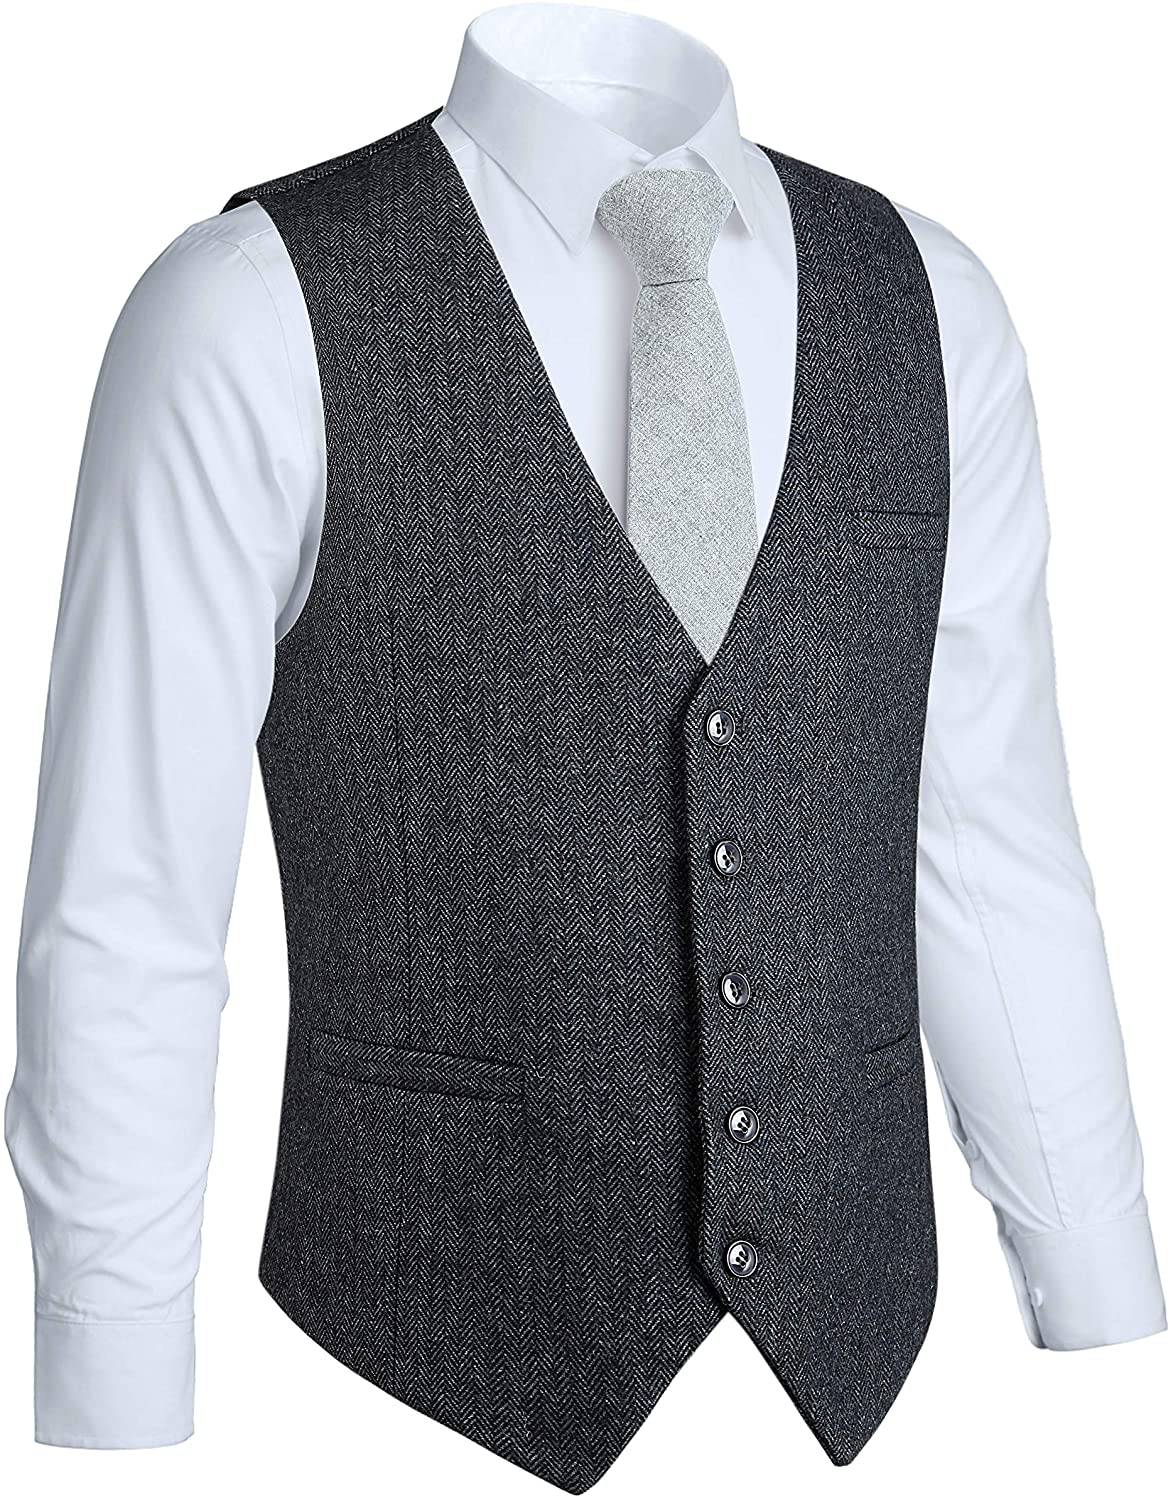 HISDERN Men's Tweed Wool Suit Vest Formal Premium Slim Fit Herringbone Blend Tuxedo Waistcoat for Groom Wedding Party Gray